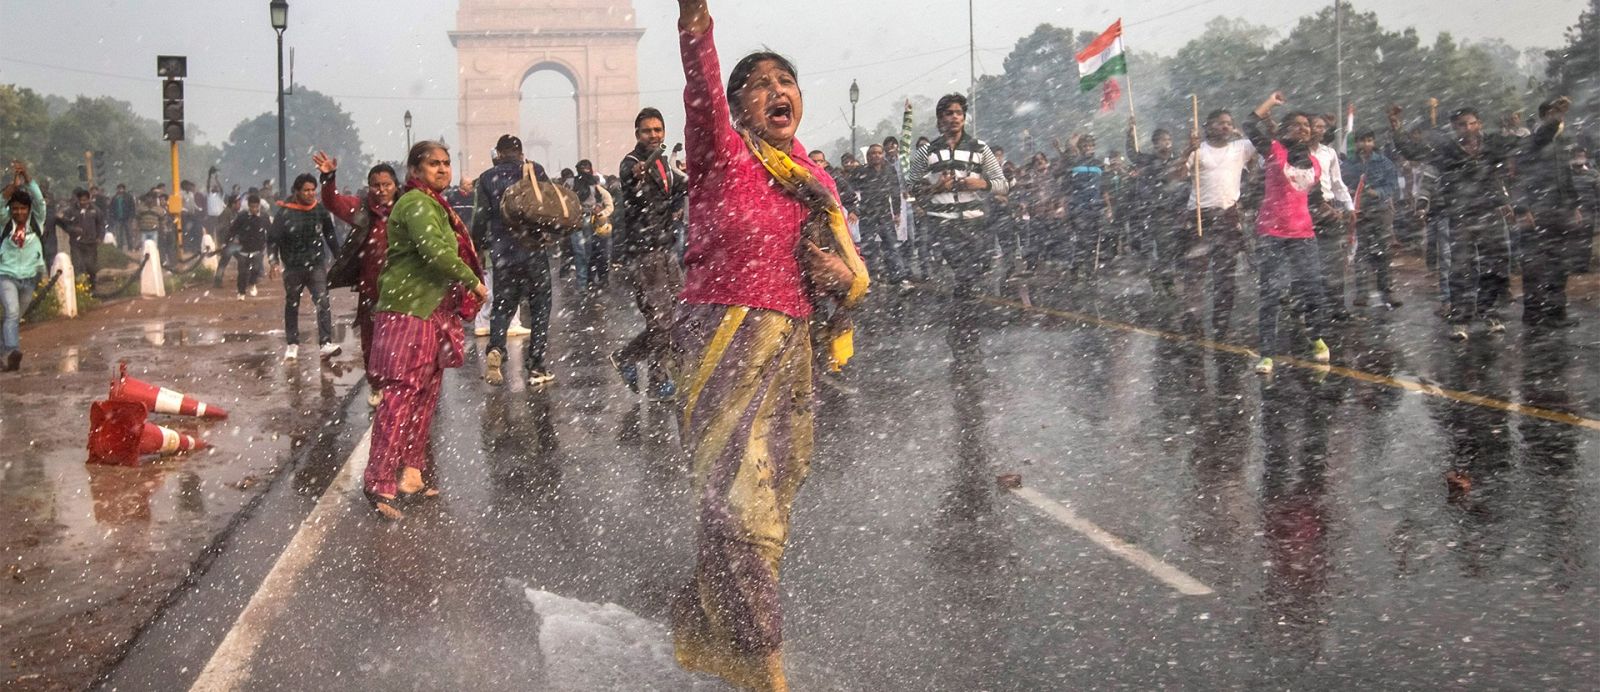 El documental India's Daughter narra una violación en grupo. Antonella Broglia nos habla de su autora